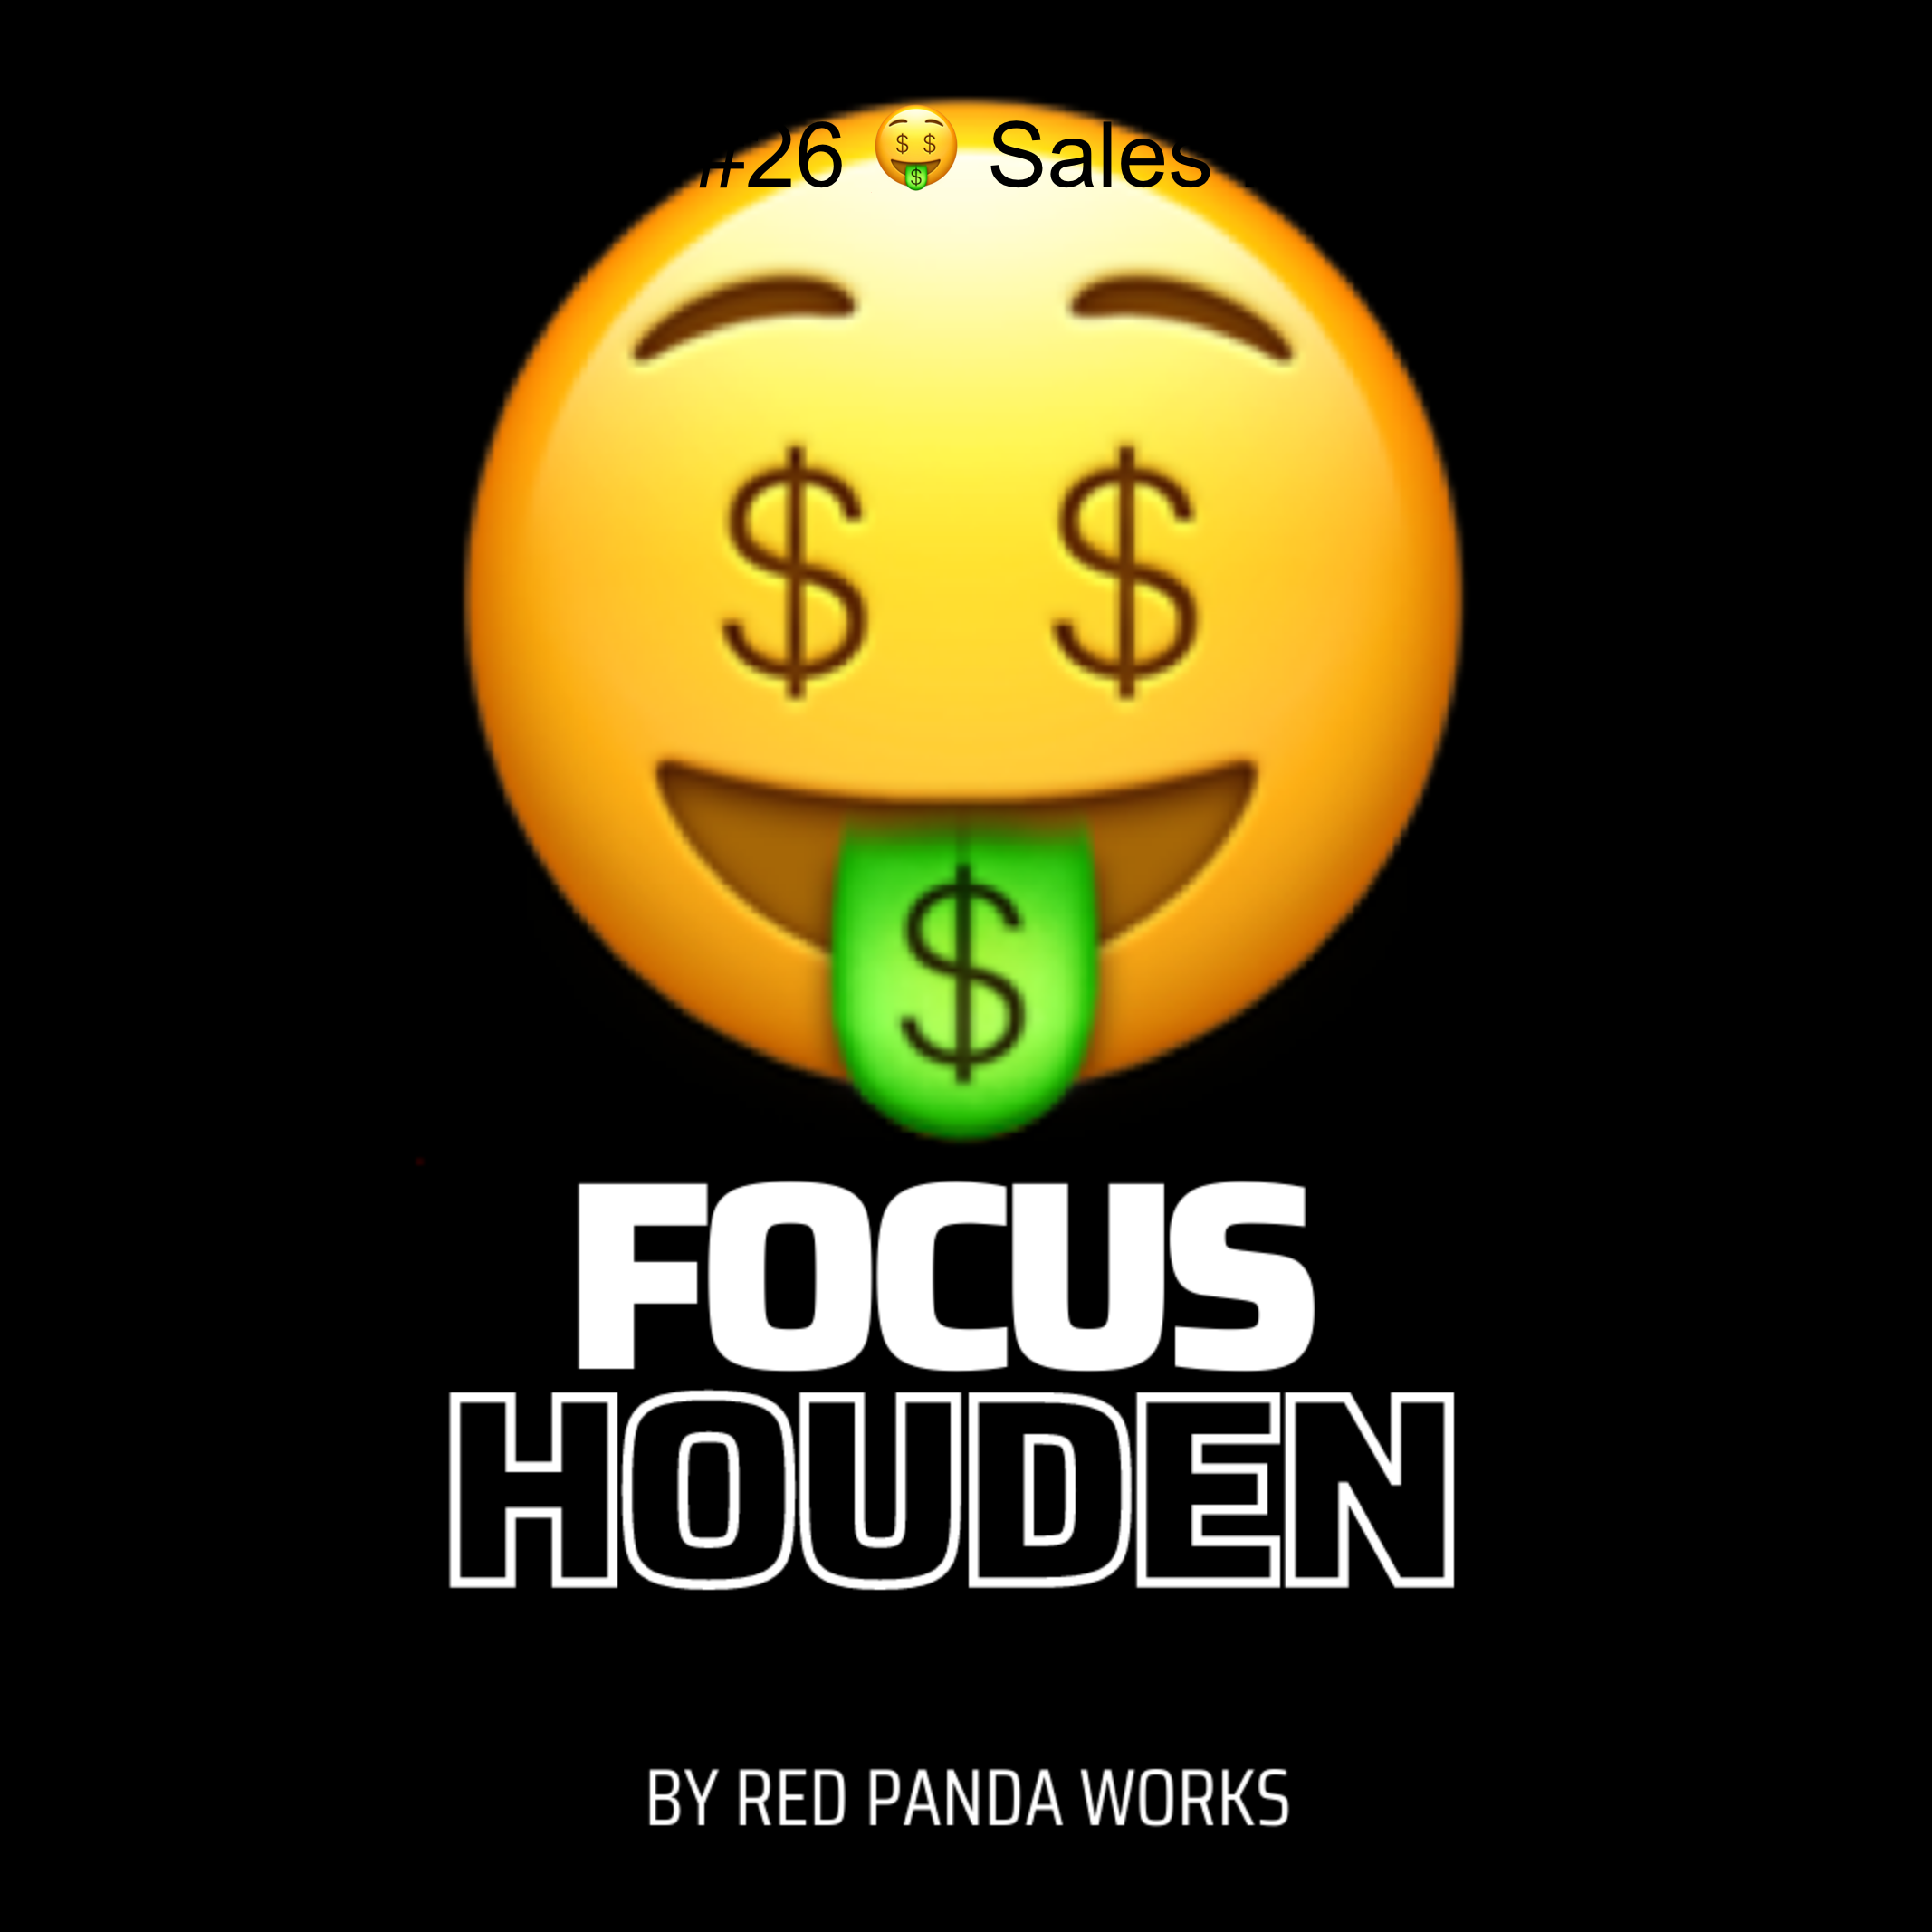 Focus houden #26 🤑 Sales Podcast